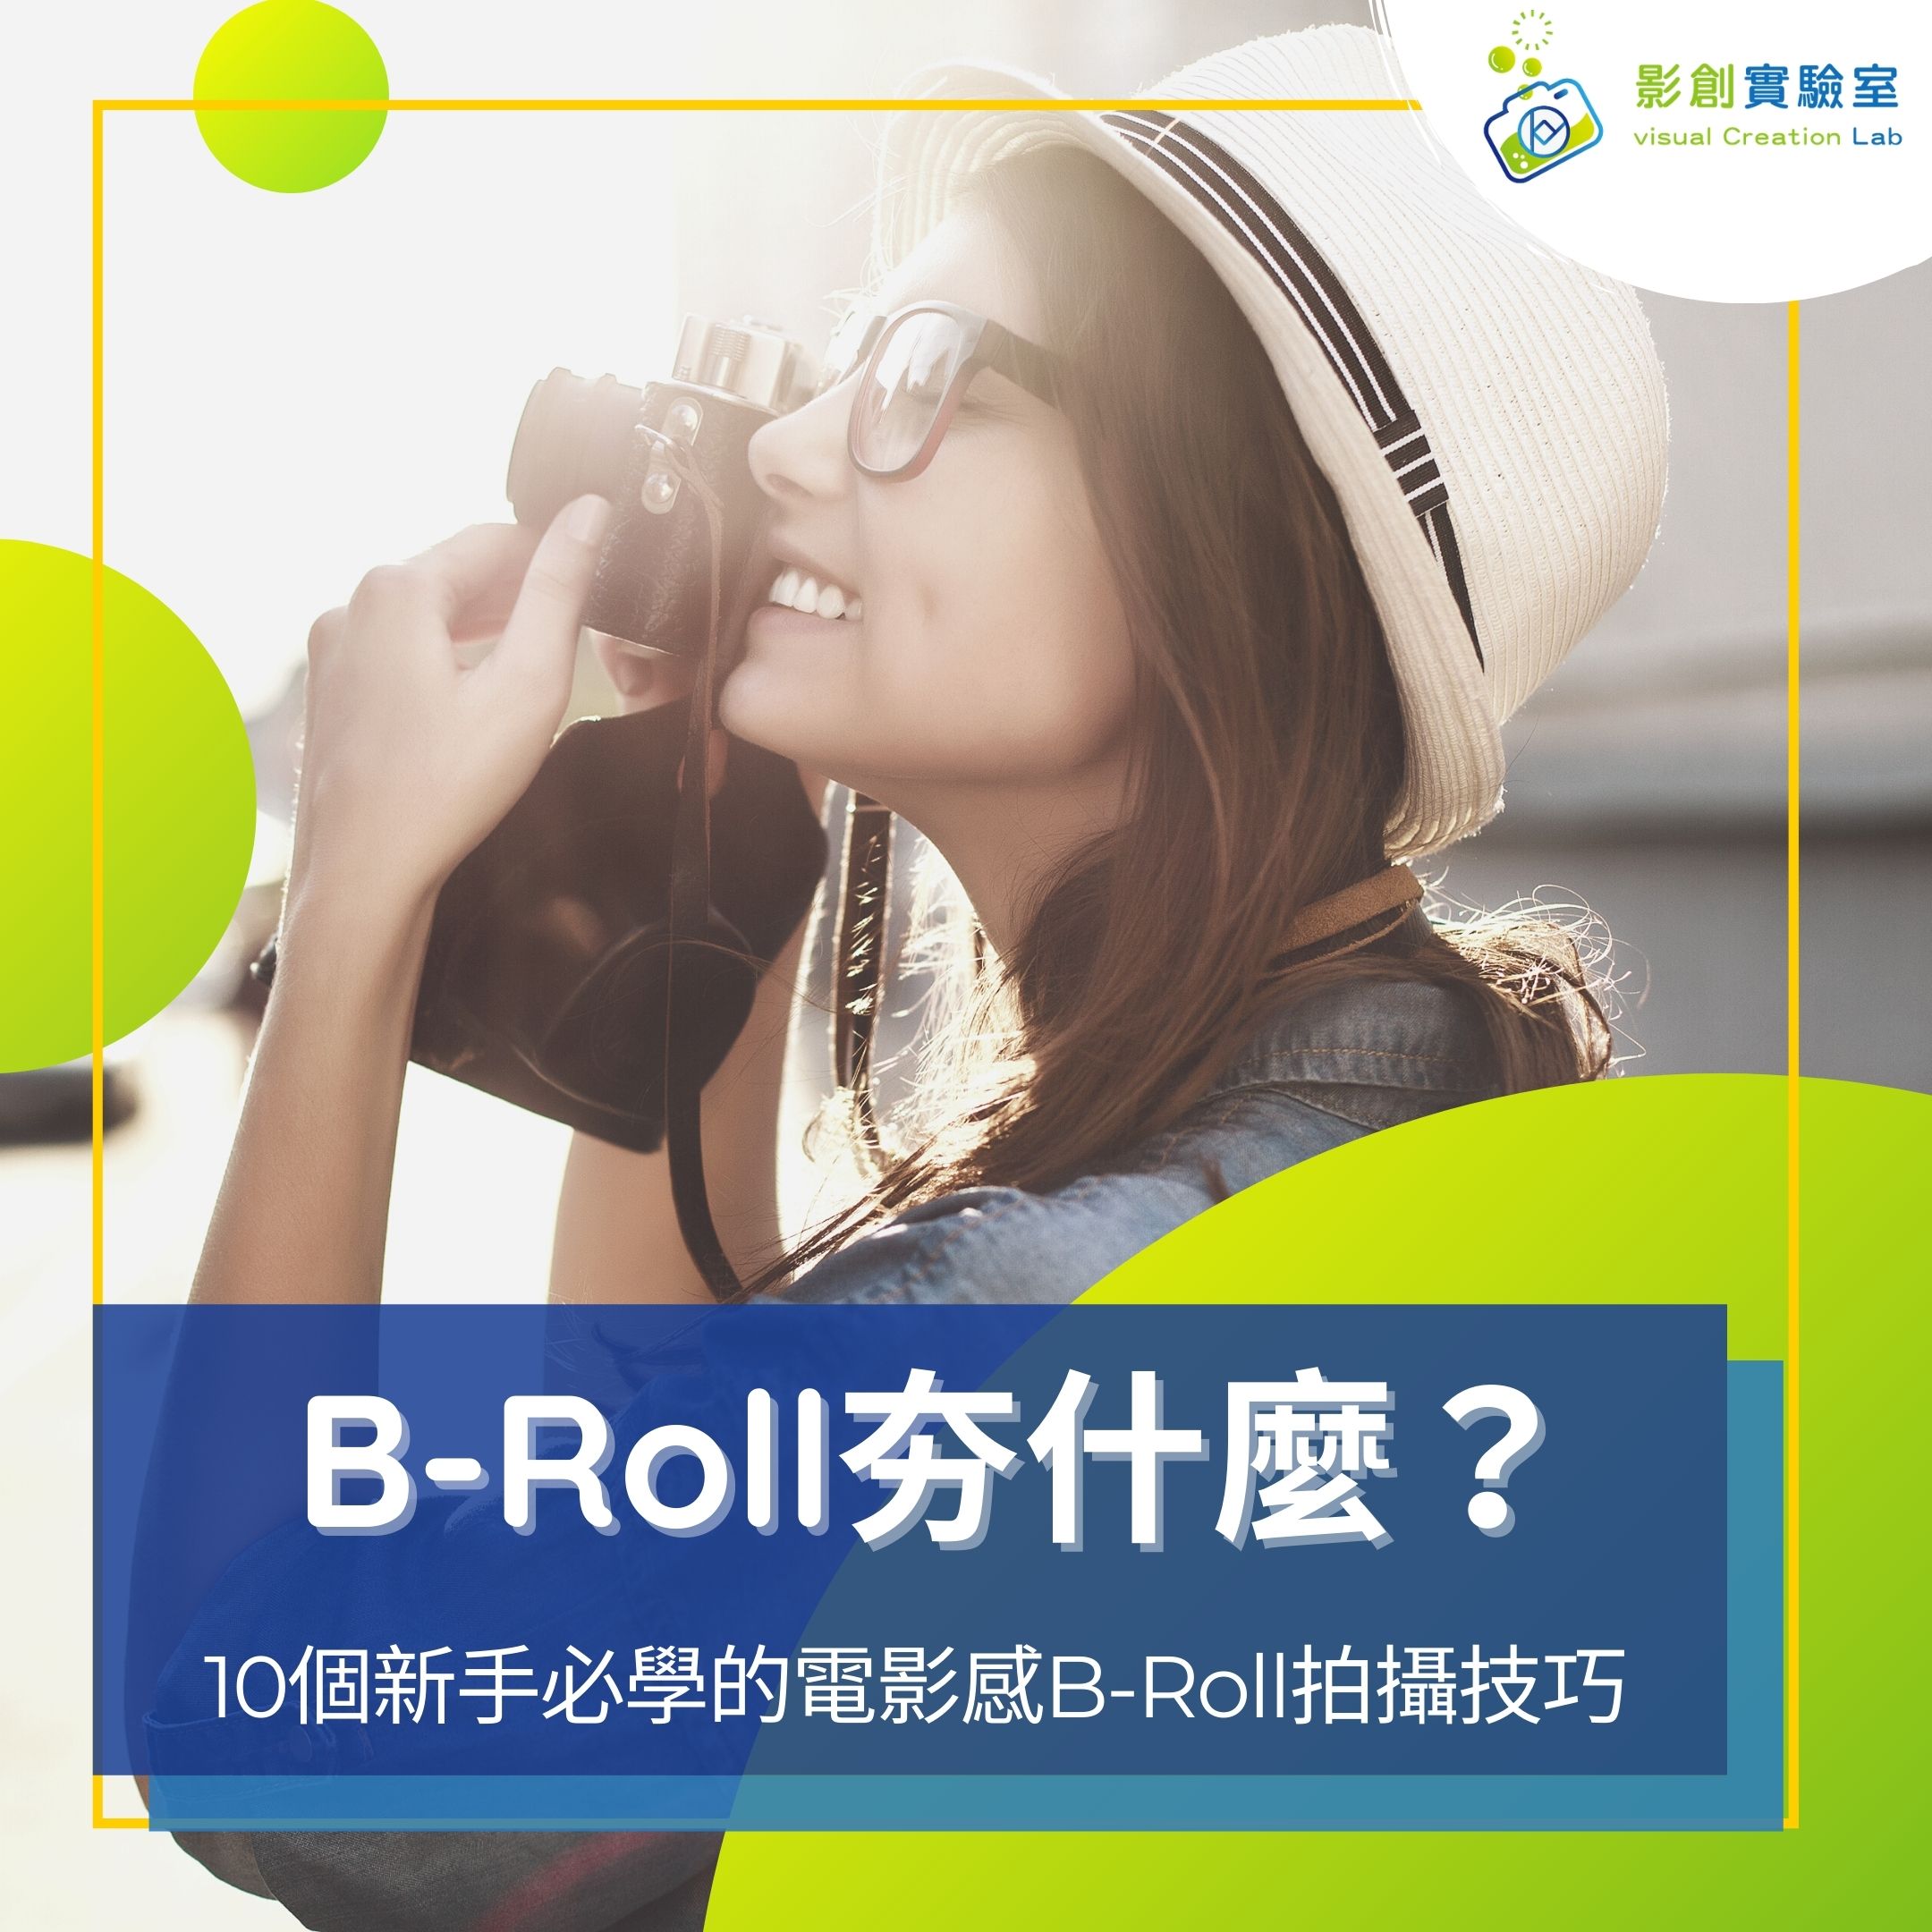 B roll 中文